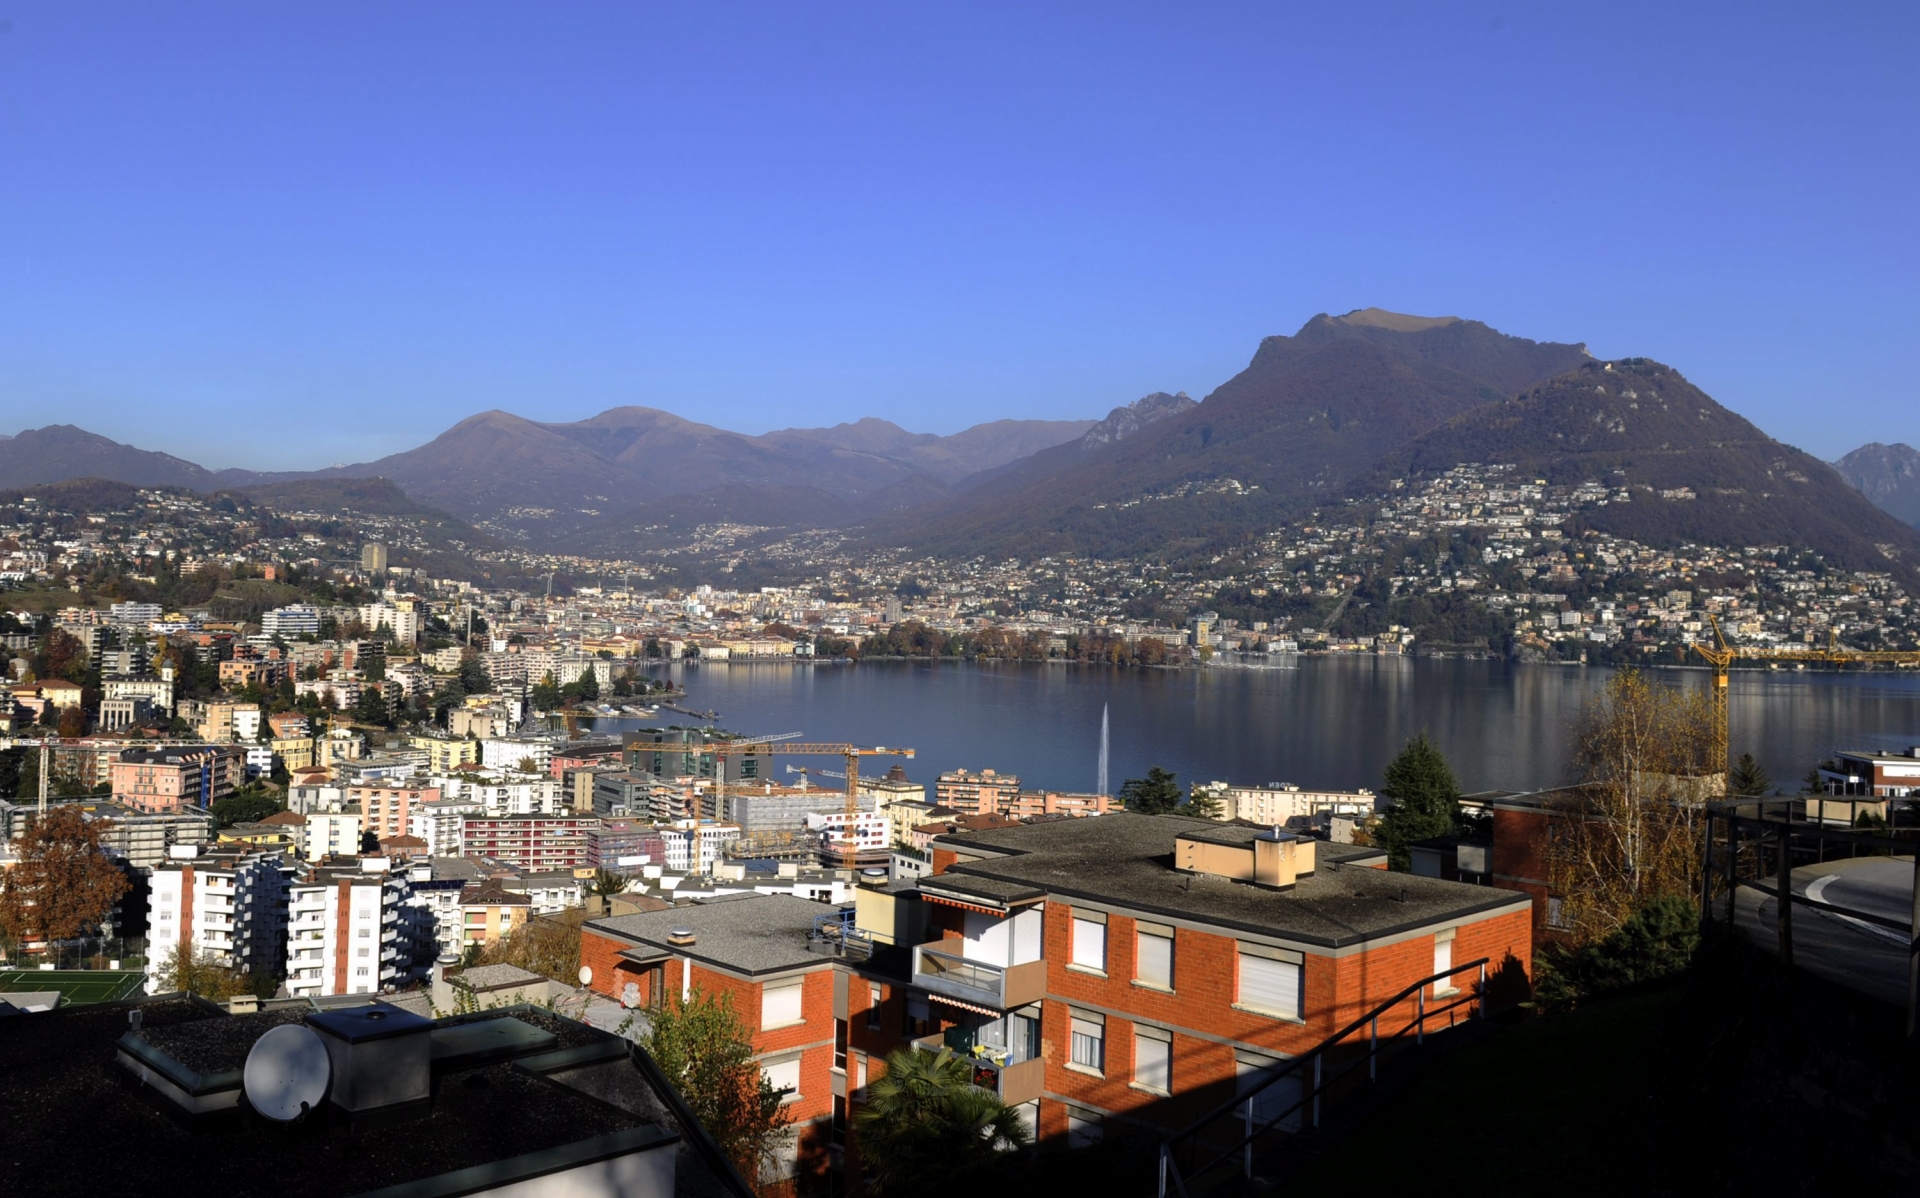 Le Tessin (ici Lugano) est considérablement touché par la sous-enchère salariale selon les initiants.